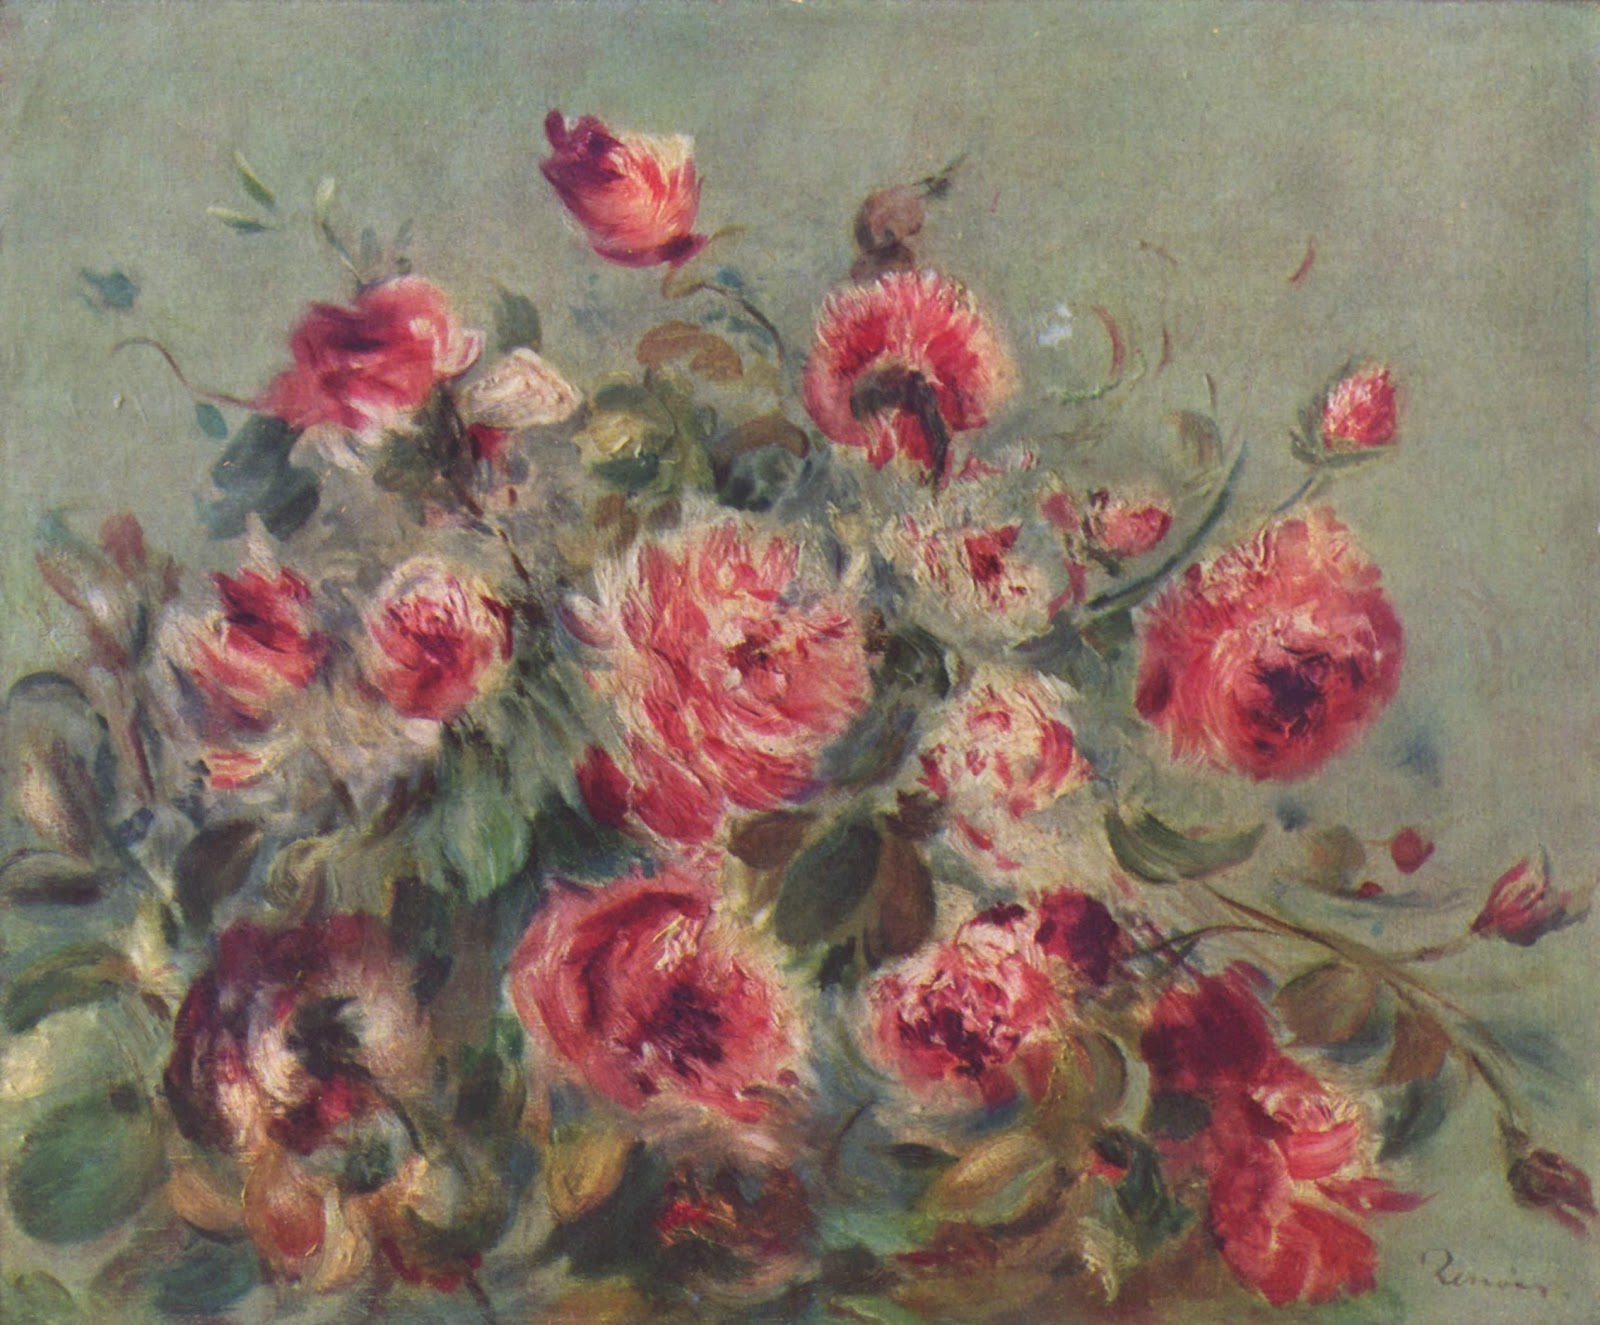 Pierre+Auguste+Renoir-1841-1-19 (726).jpg